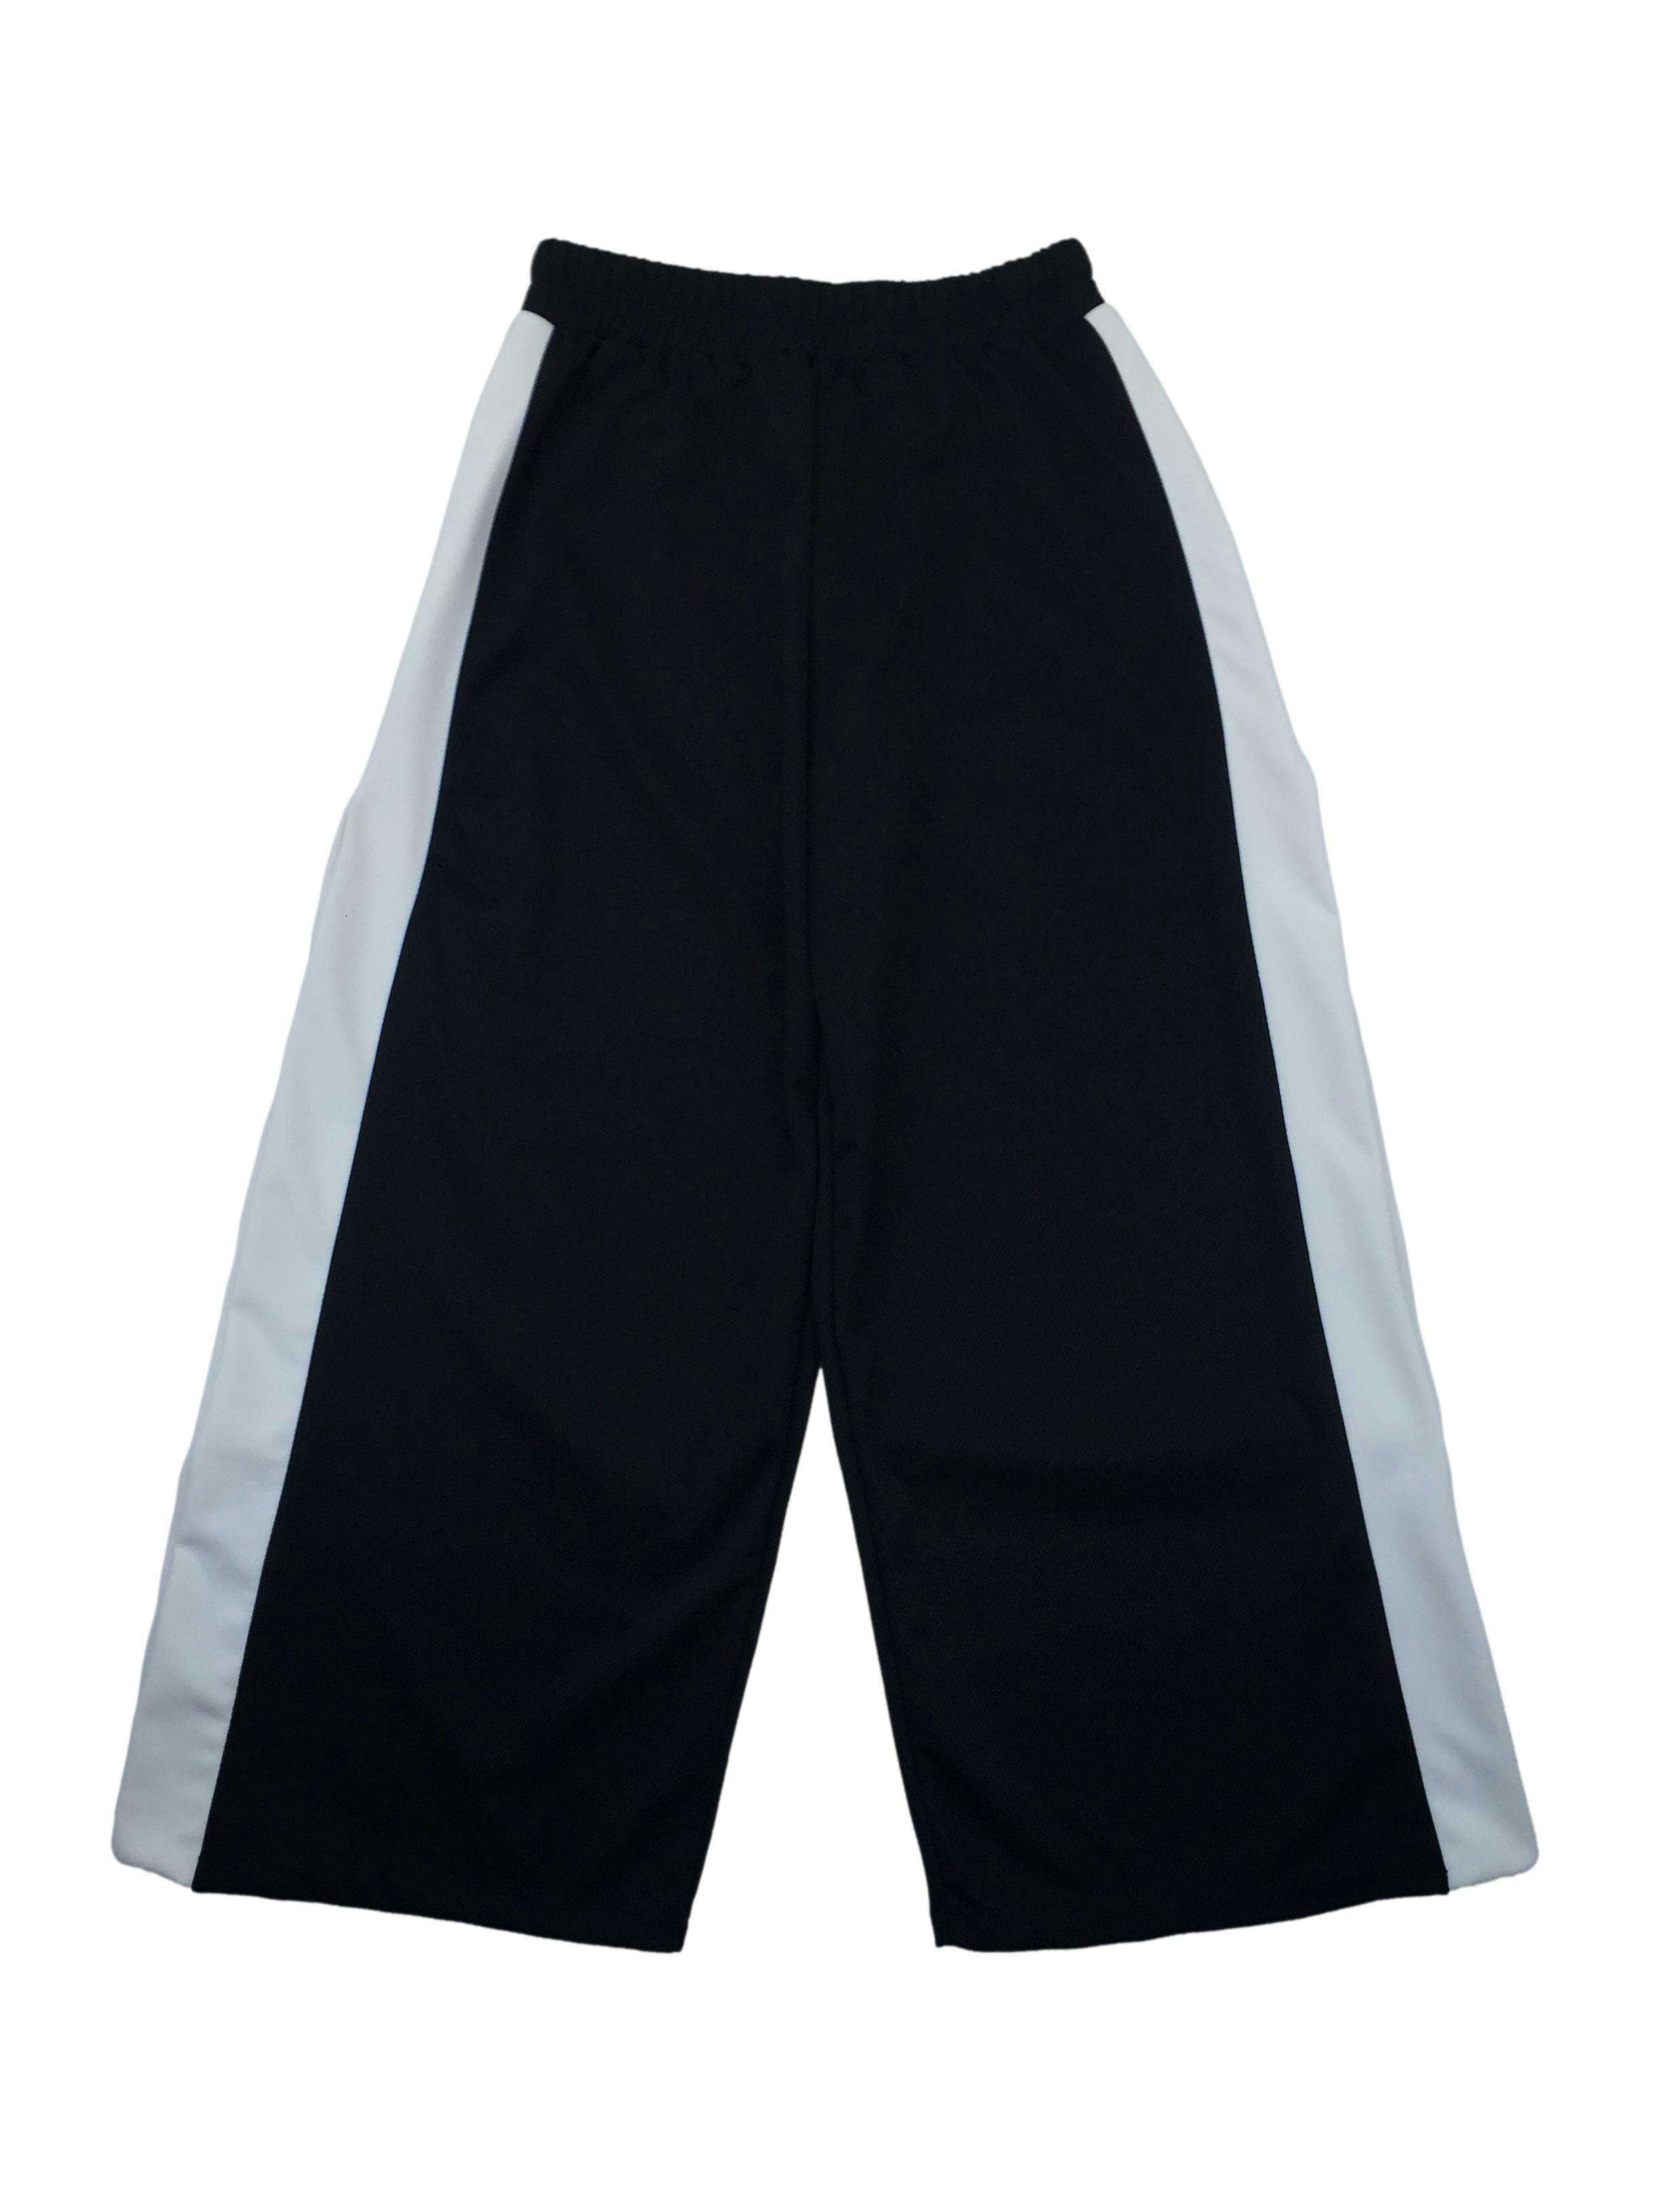 Pantalón La Matier tipo buzo negro con franjas blancas, abertura en los laterales, elástico en la cintura. Cintura: 70cm (sin estirar), Tiro: 33 m, Largo: 95cm